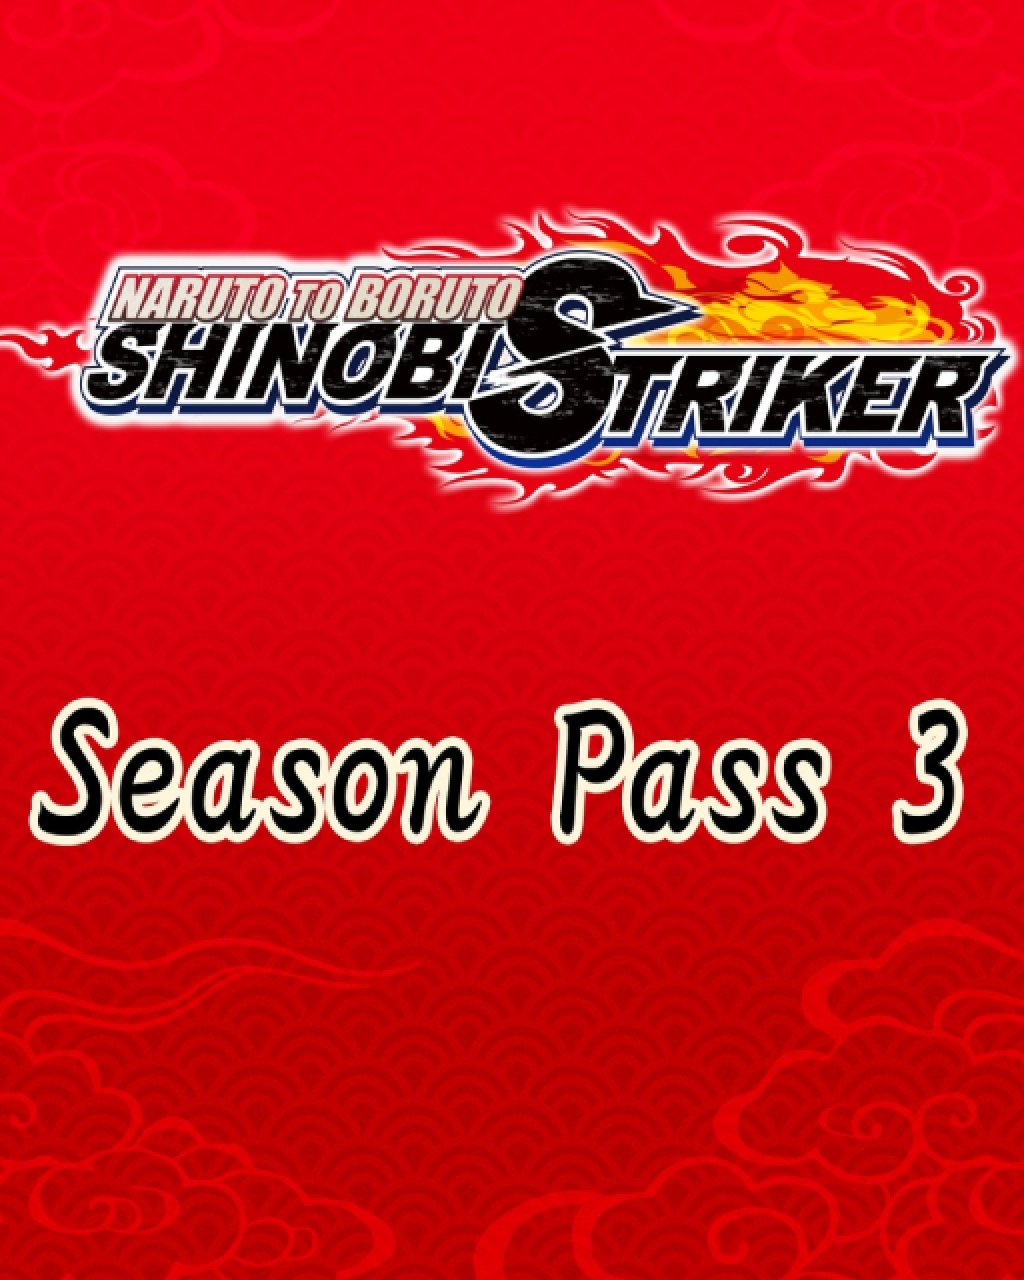 ESD NARUTO TO BORUTO SHINOBI STRIKER Season Pass 3